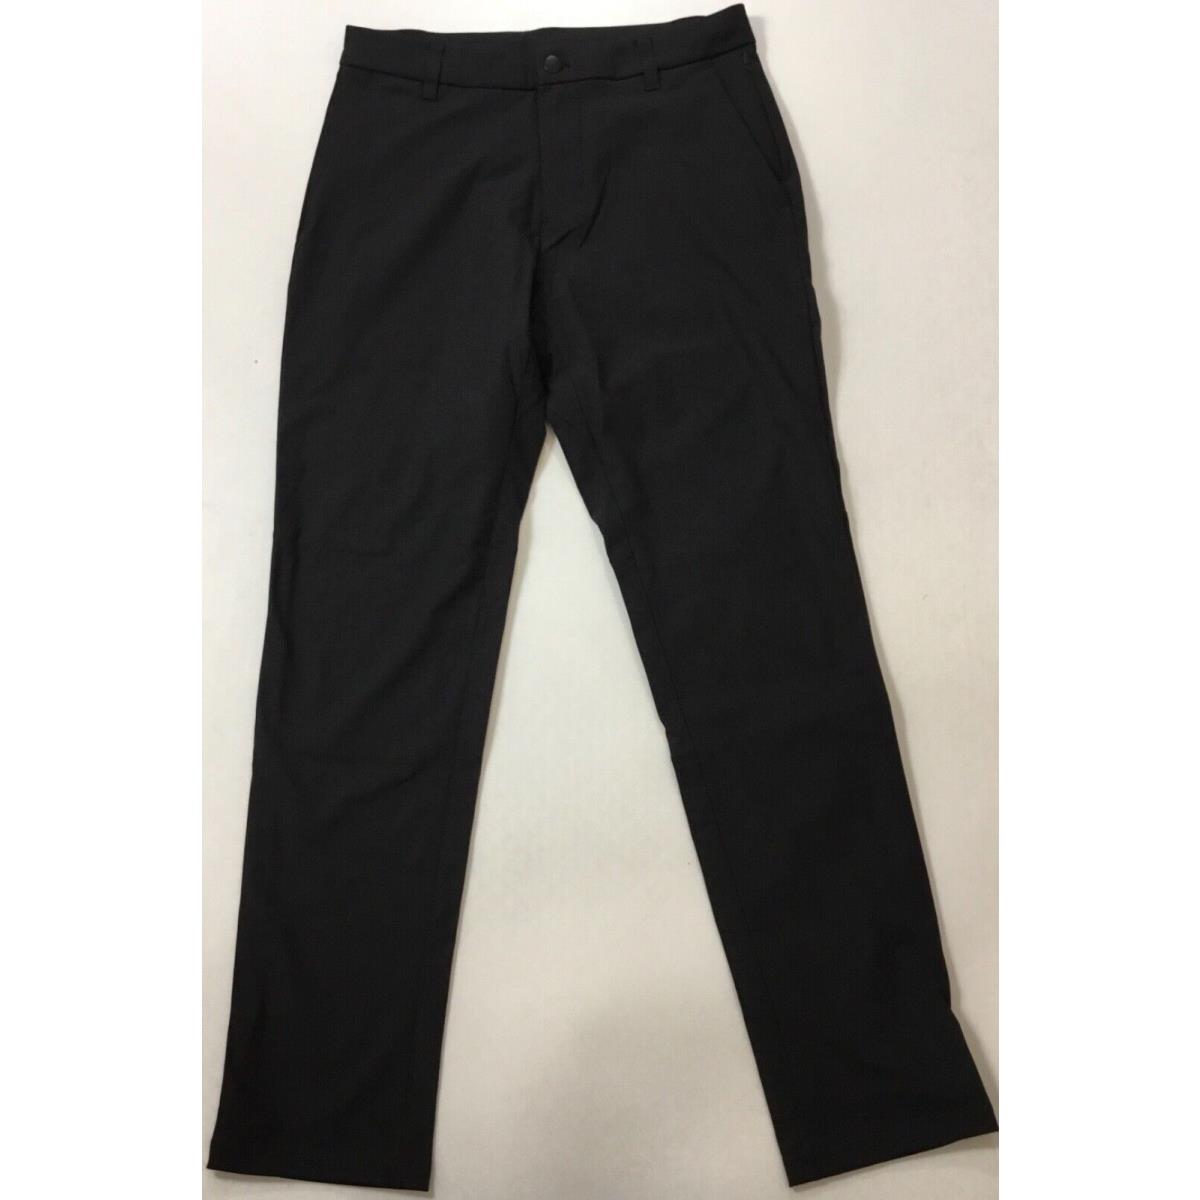 Lululemon Men Commission Pant Classic 32 L Short LM5985S Black Size 31